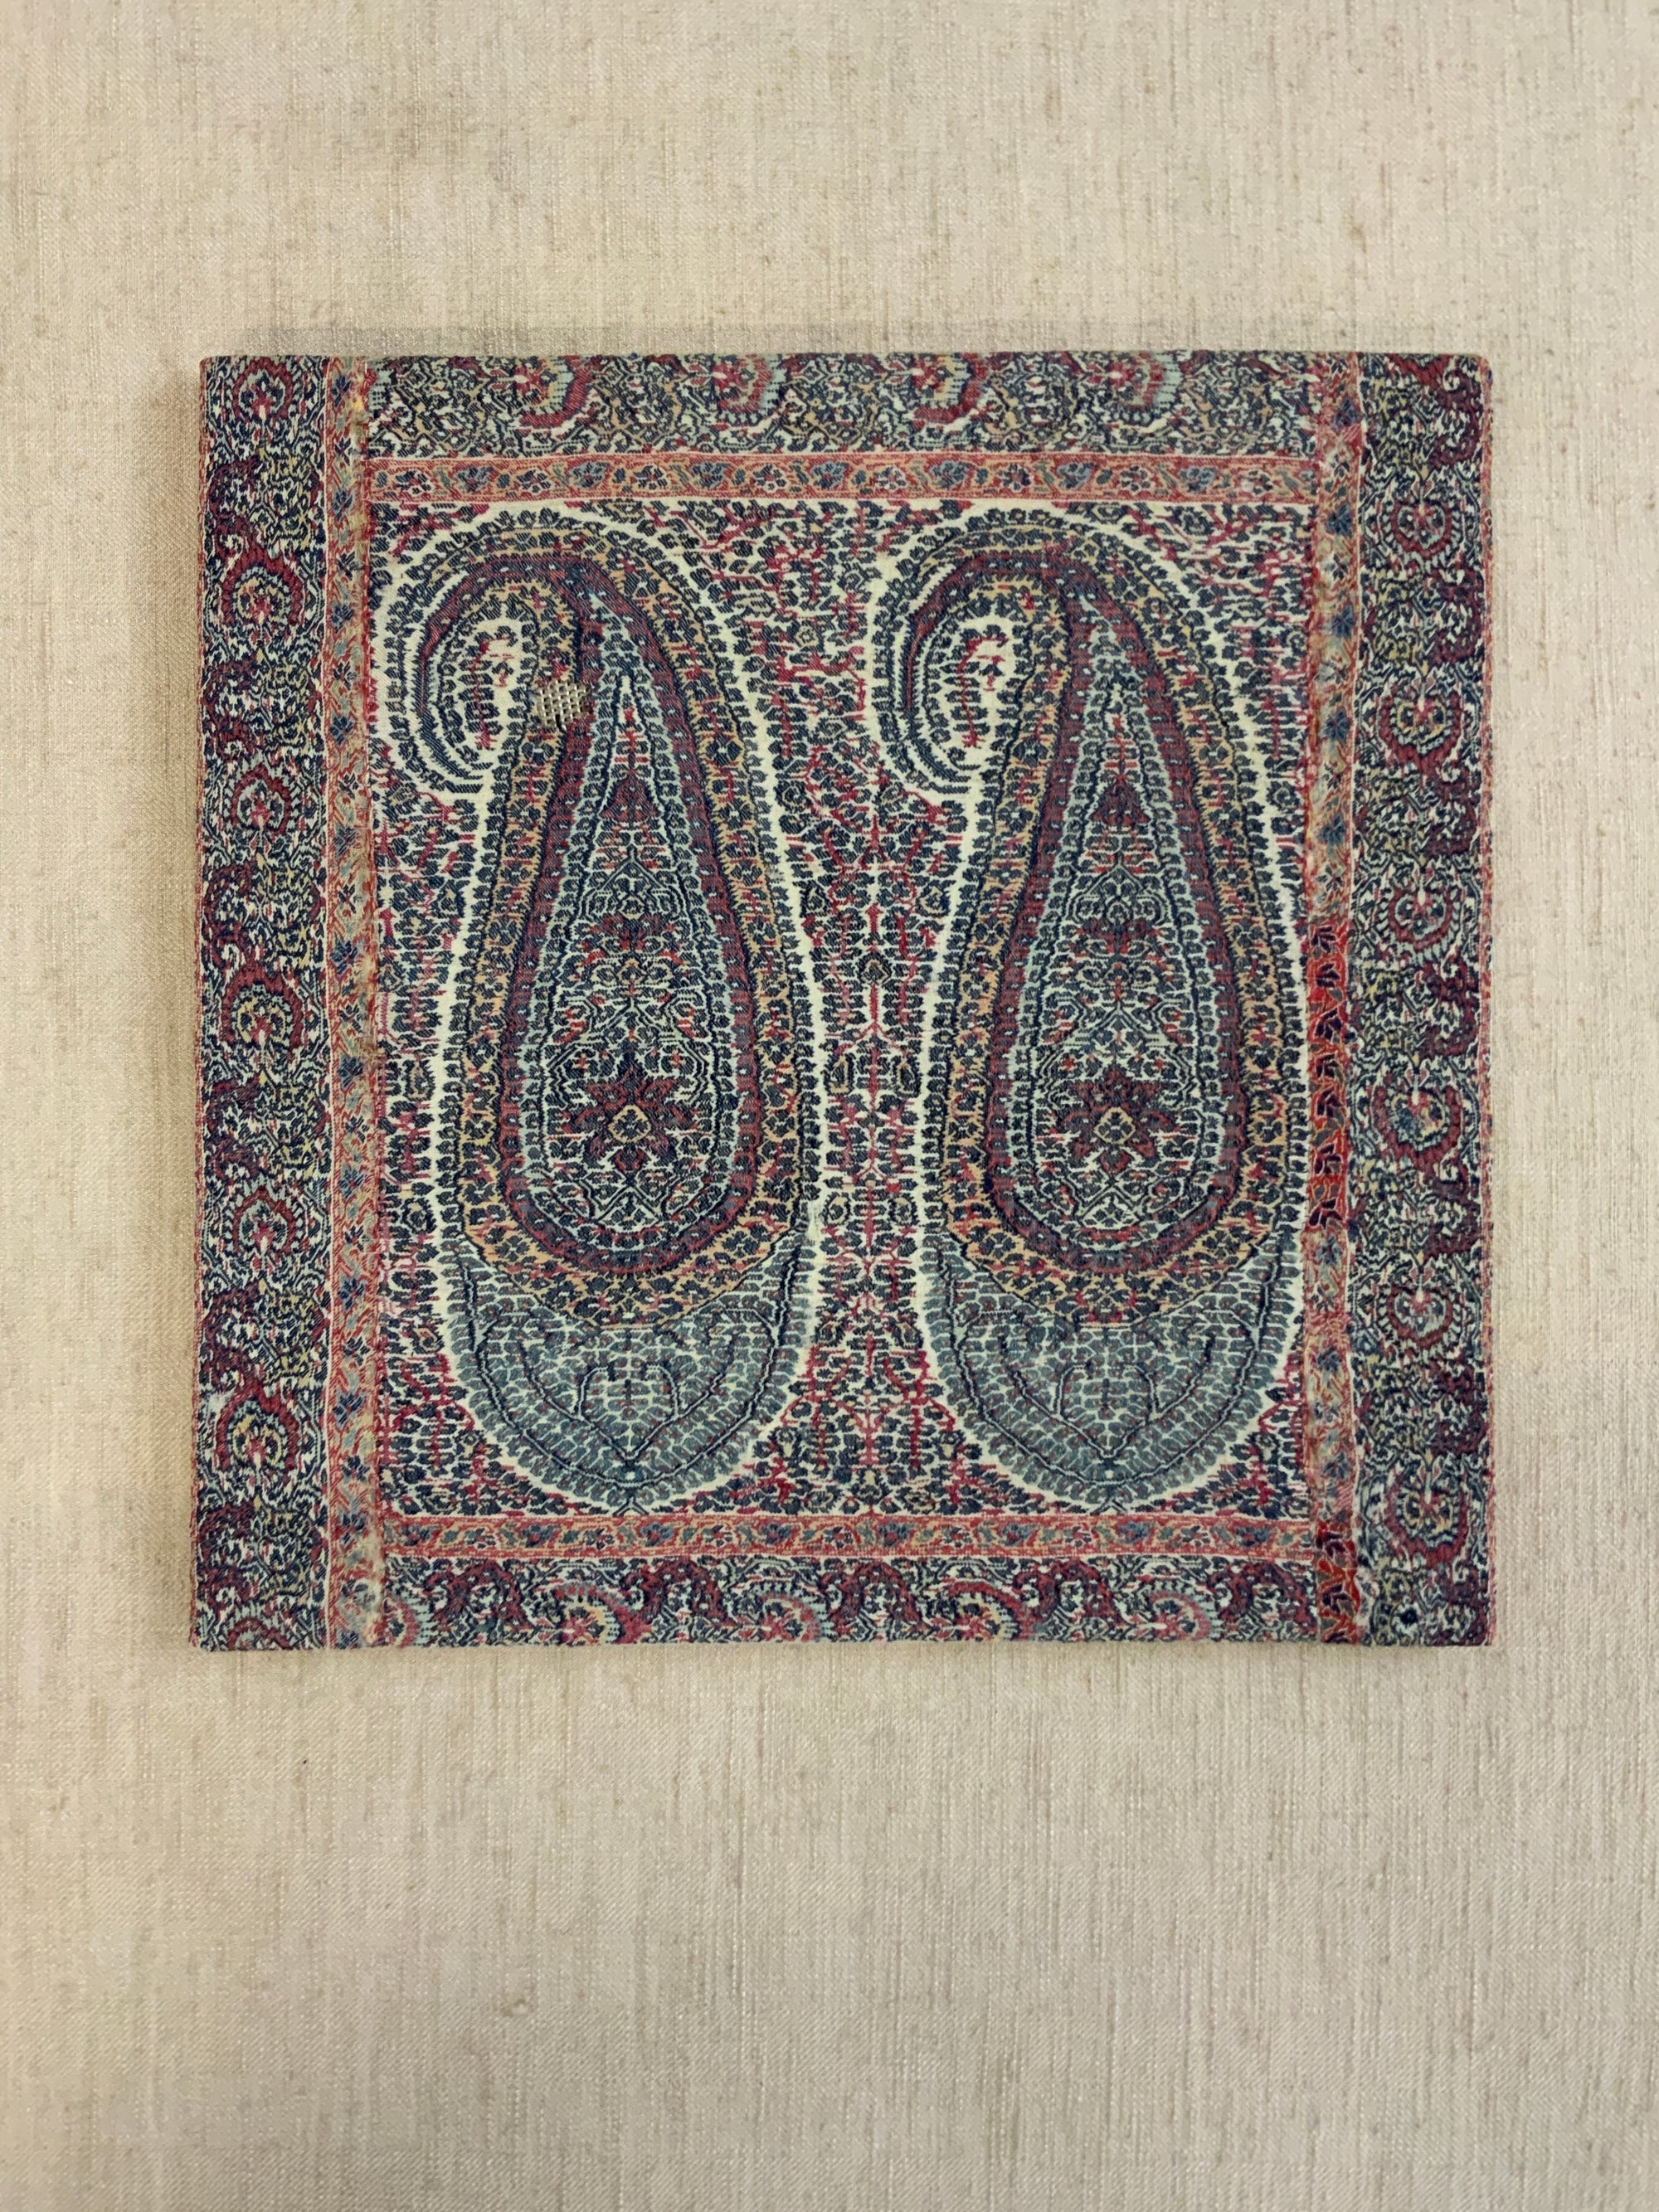 Kashmir shawl fragment (46 x 46cm)